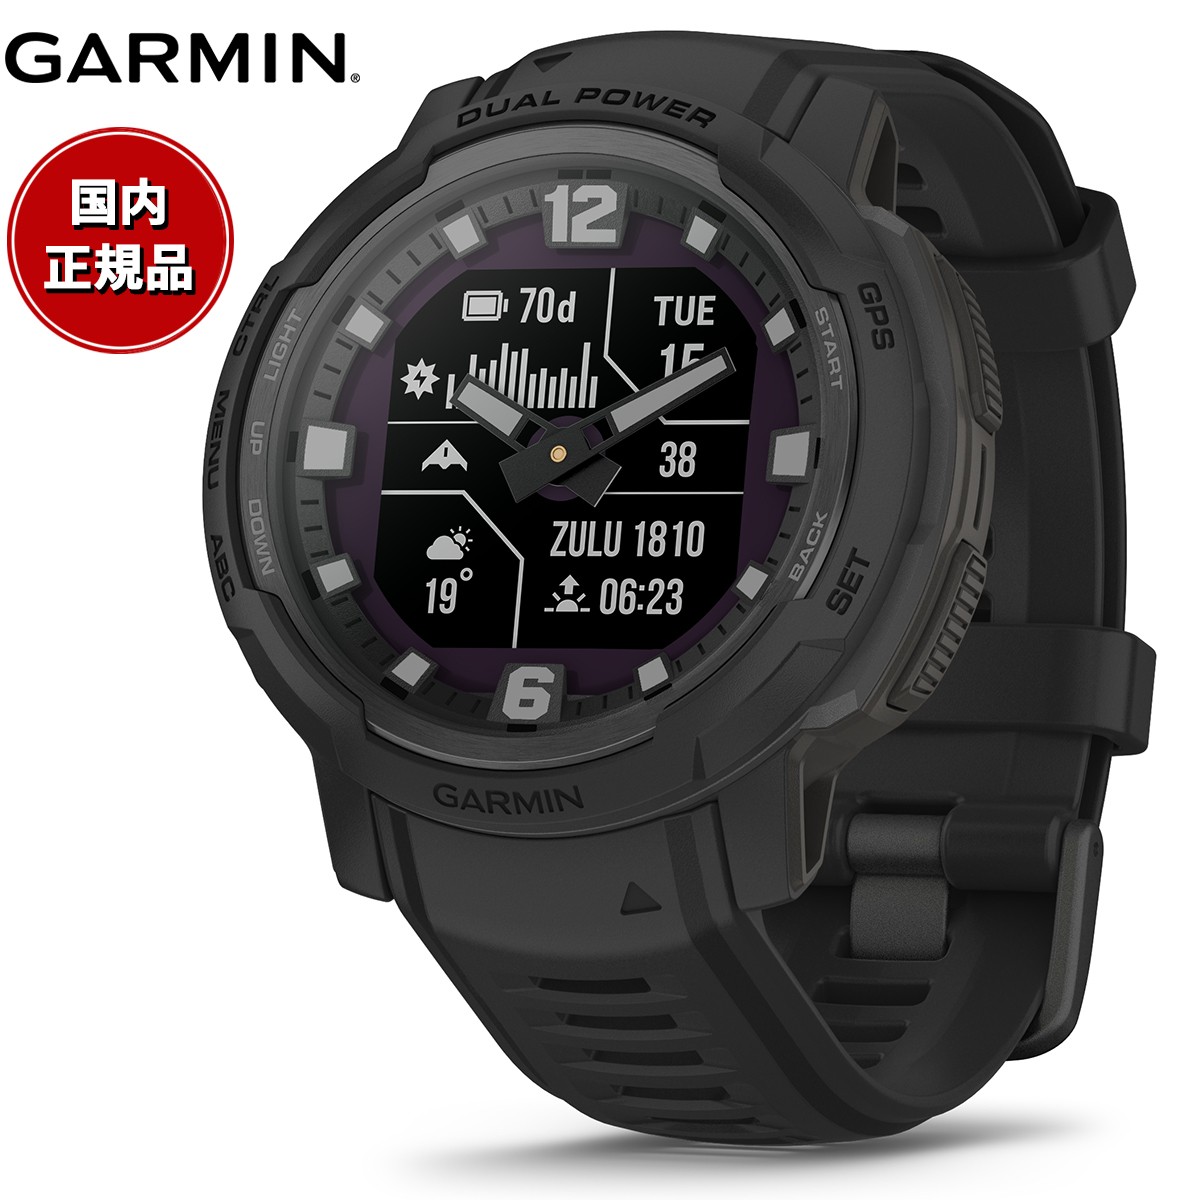 ガーミン GARMIN Instinct Crossover インスティンクト クロスオーバー デュアルパワー タクティクス 010-02730-40 Dual Power Tactical Edition Black スマートウォッチ 腕時計